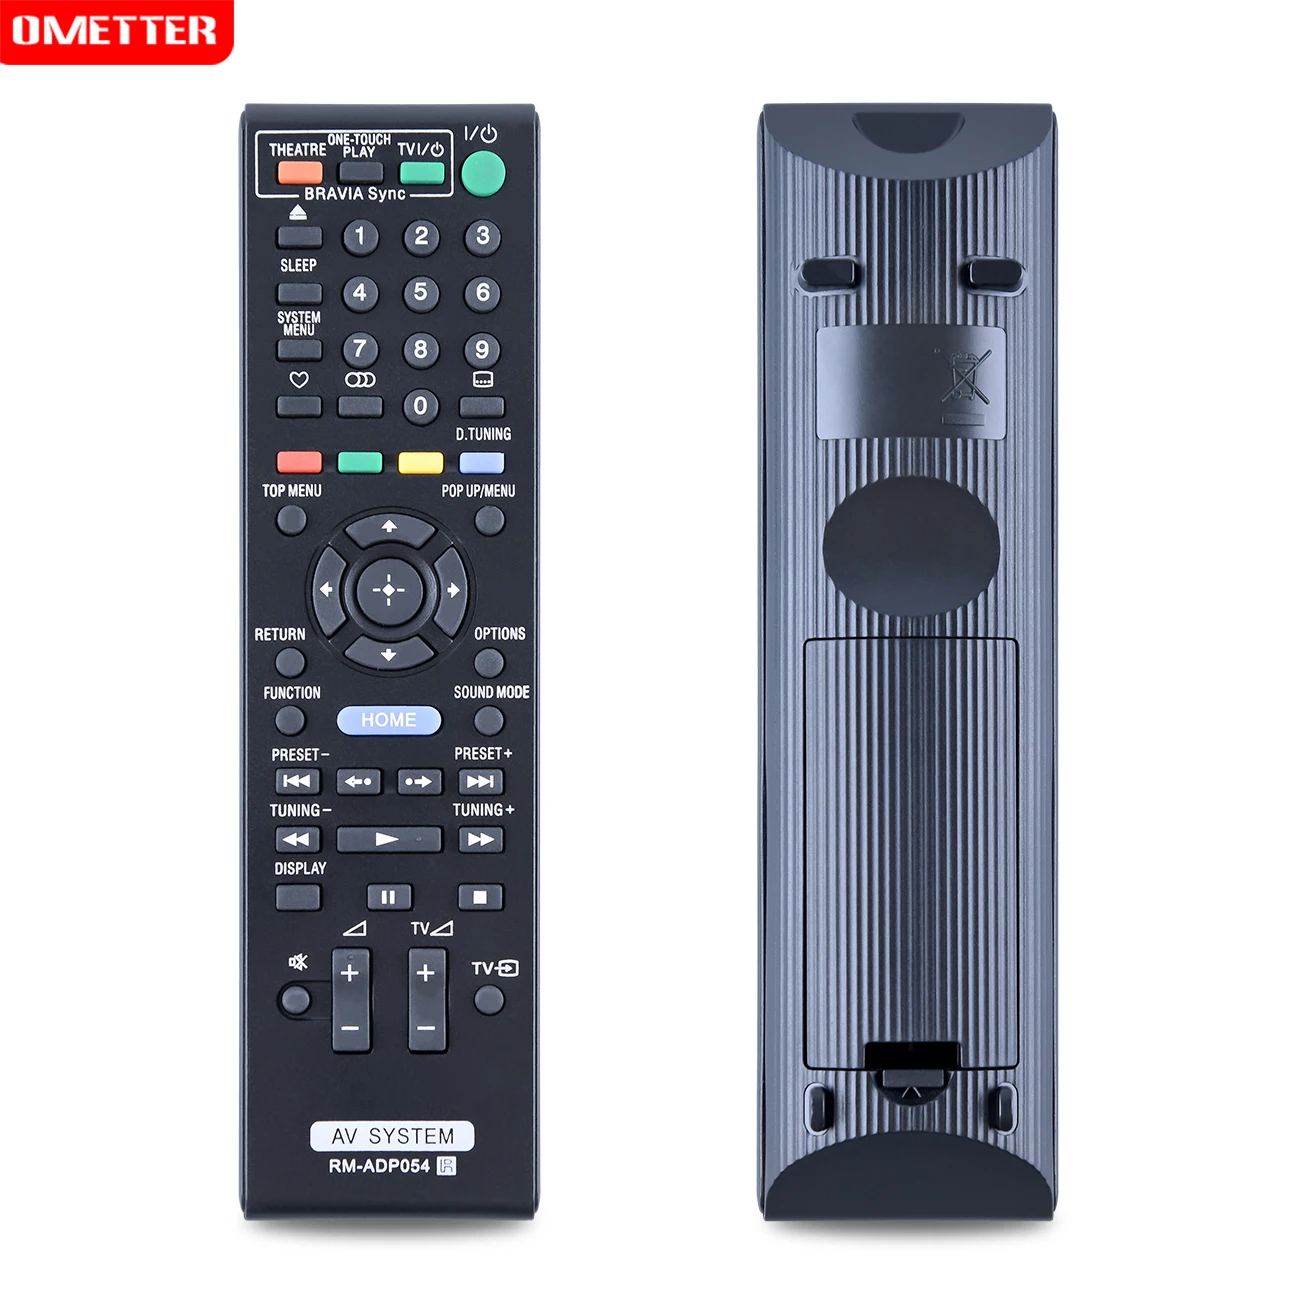 remote control for sony DVD player BDV-E370 E570 T57 E470 E870 T37 E970W E670W E870 E470 E370 T57 T37 SS-TSB101 TSB104 images - 6